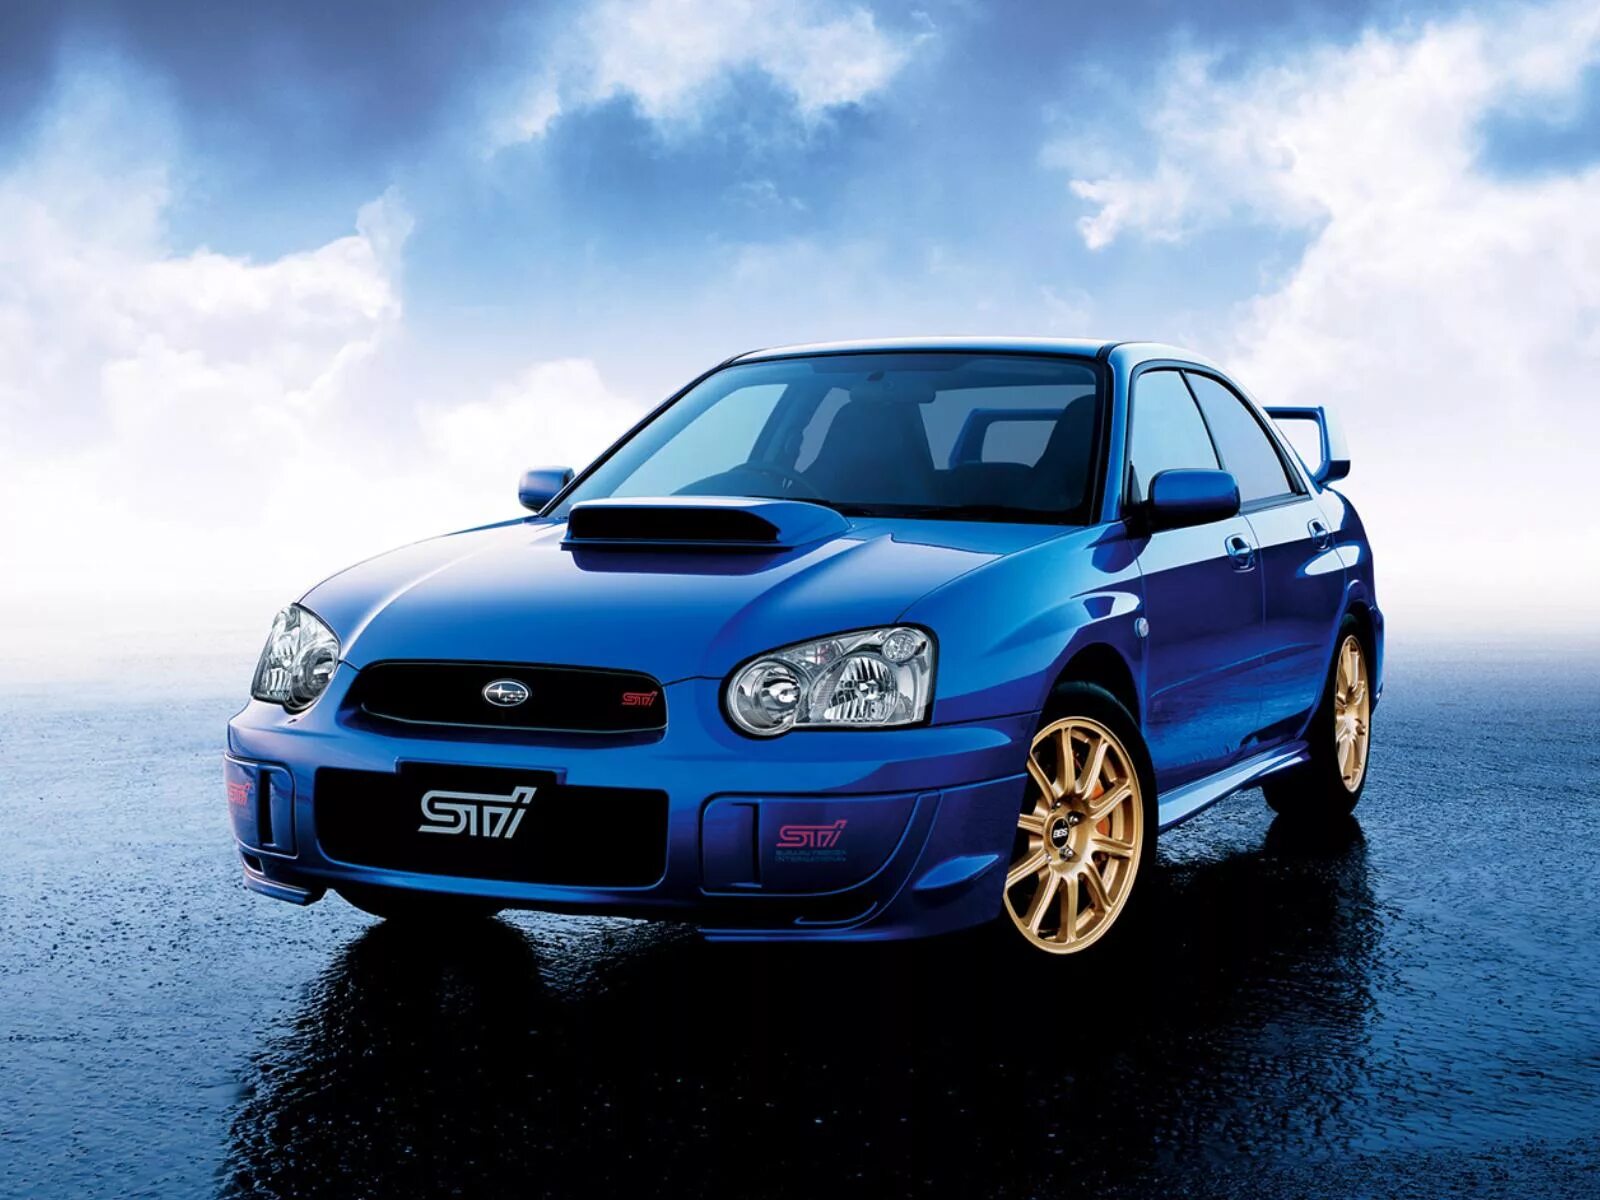 Subaru Impreza WRX STI 2003. Subaru Impreza WRX STI 2004. Subaru Impreza STI 2005. Субару Импреза STI 2003. Дром ру субару